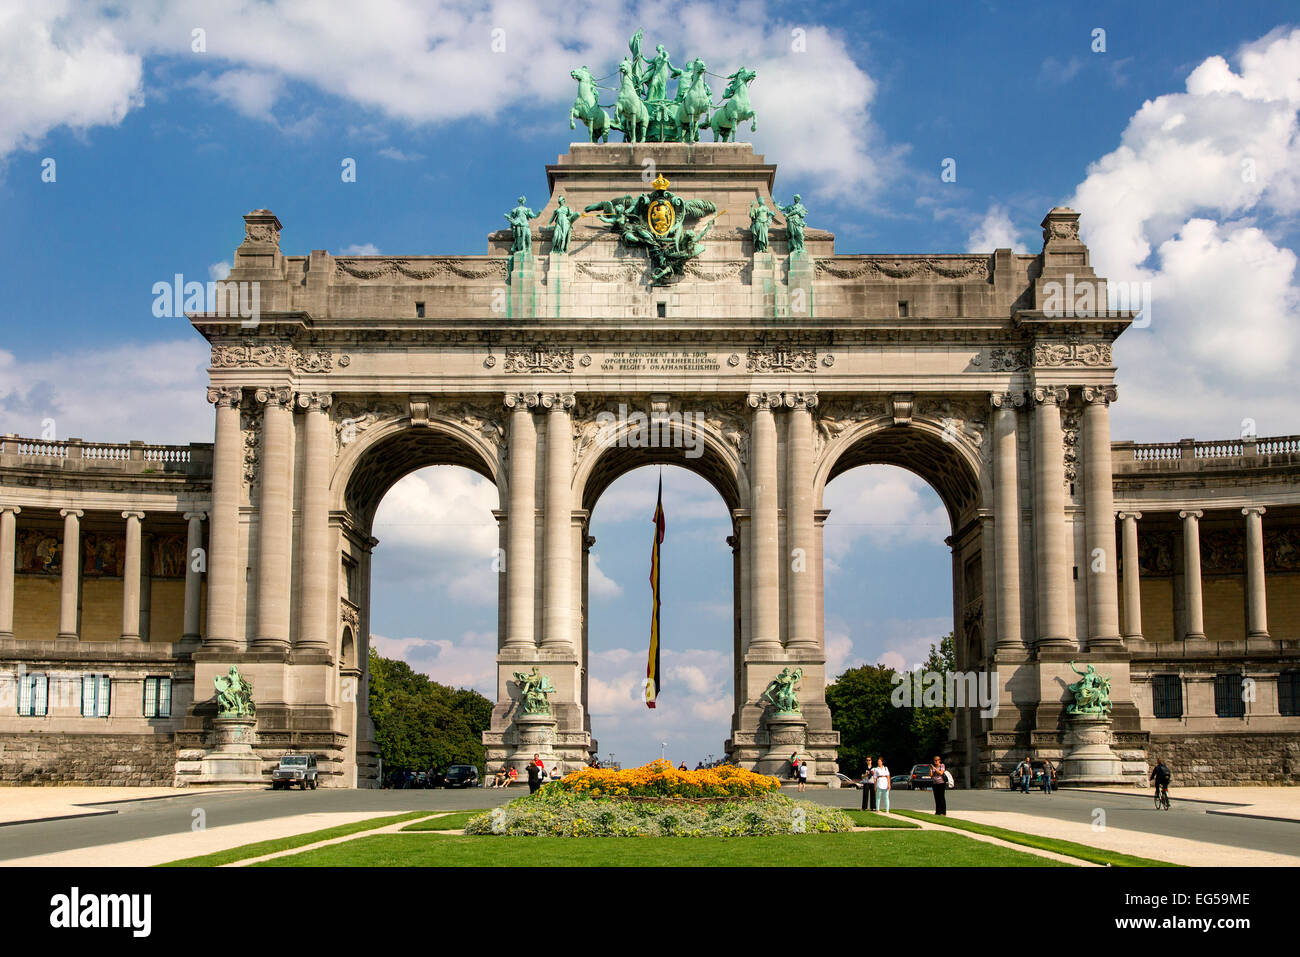 Brussels, Cinquantenaire Triumphal Arch Stock Photo